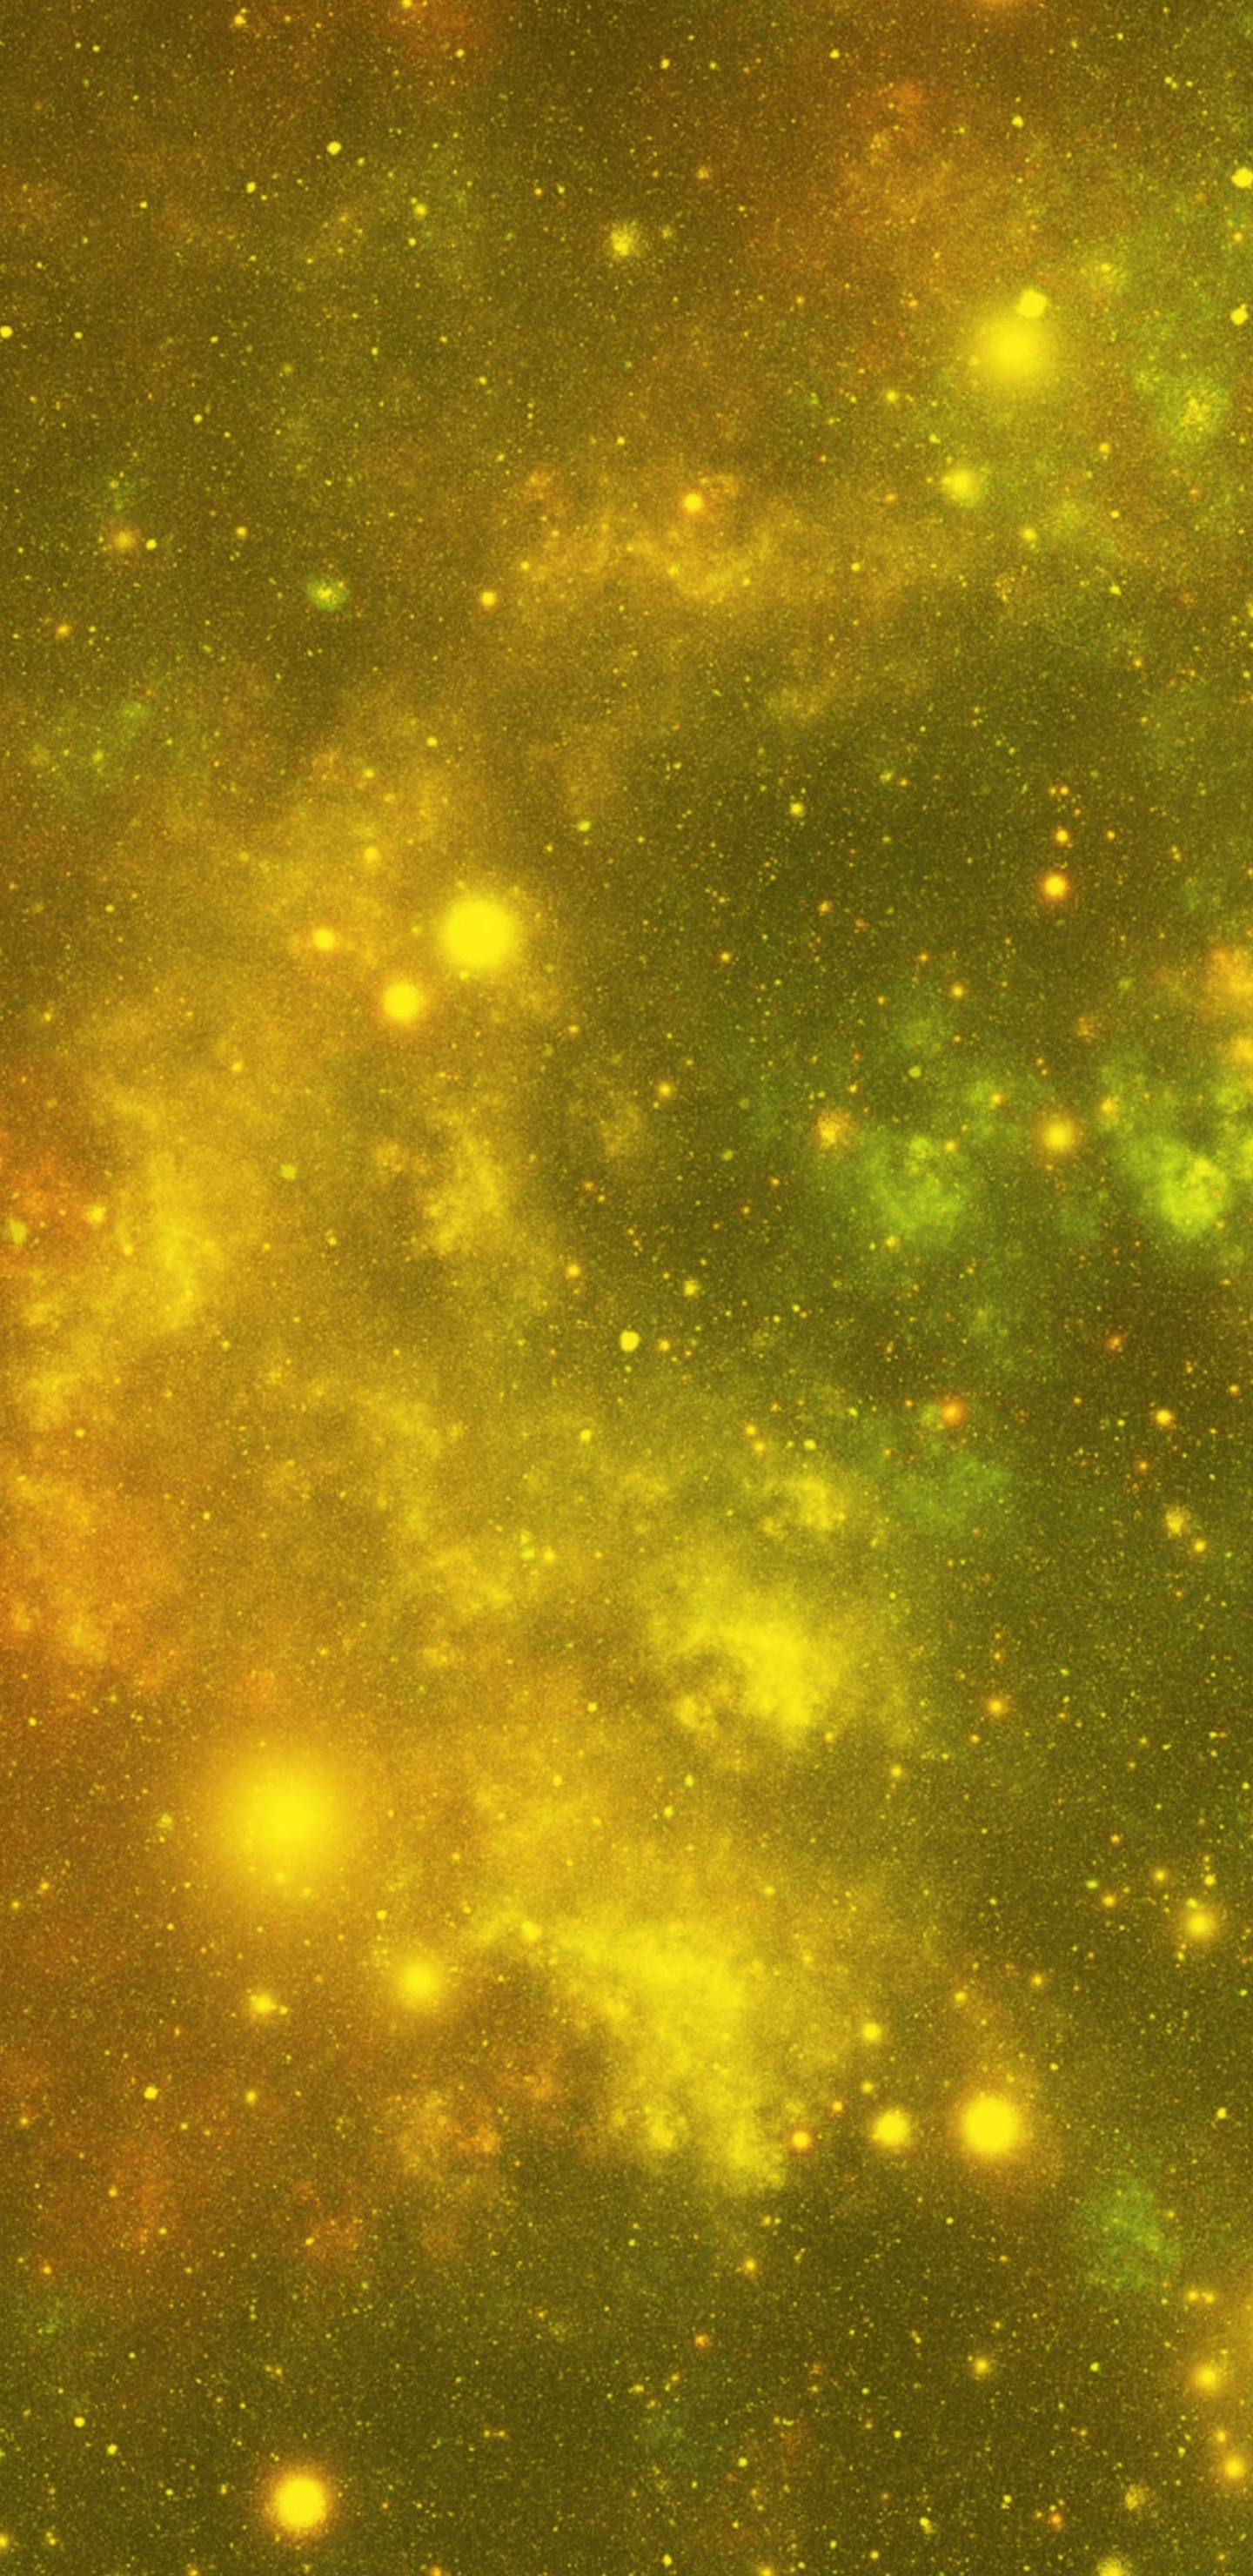 Étoiles Vertes et Jaunes Dans le Ciel. Wallpaper in 1440x2960 Resolution